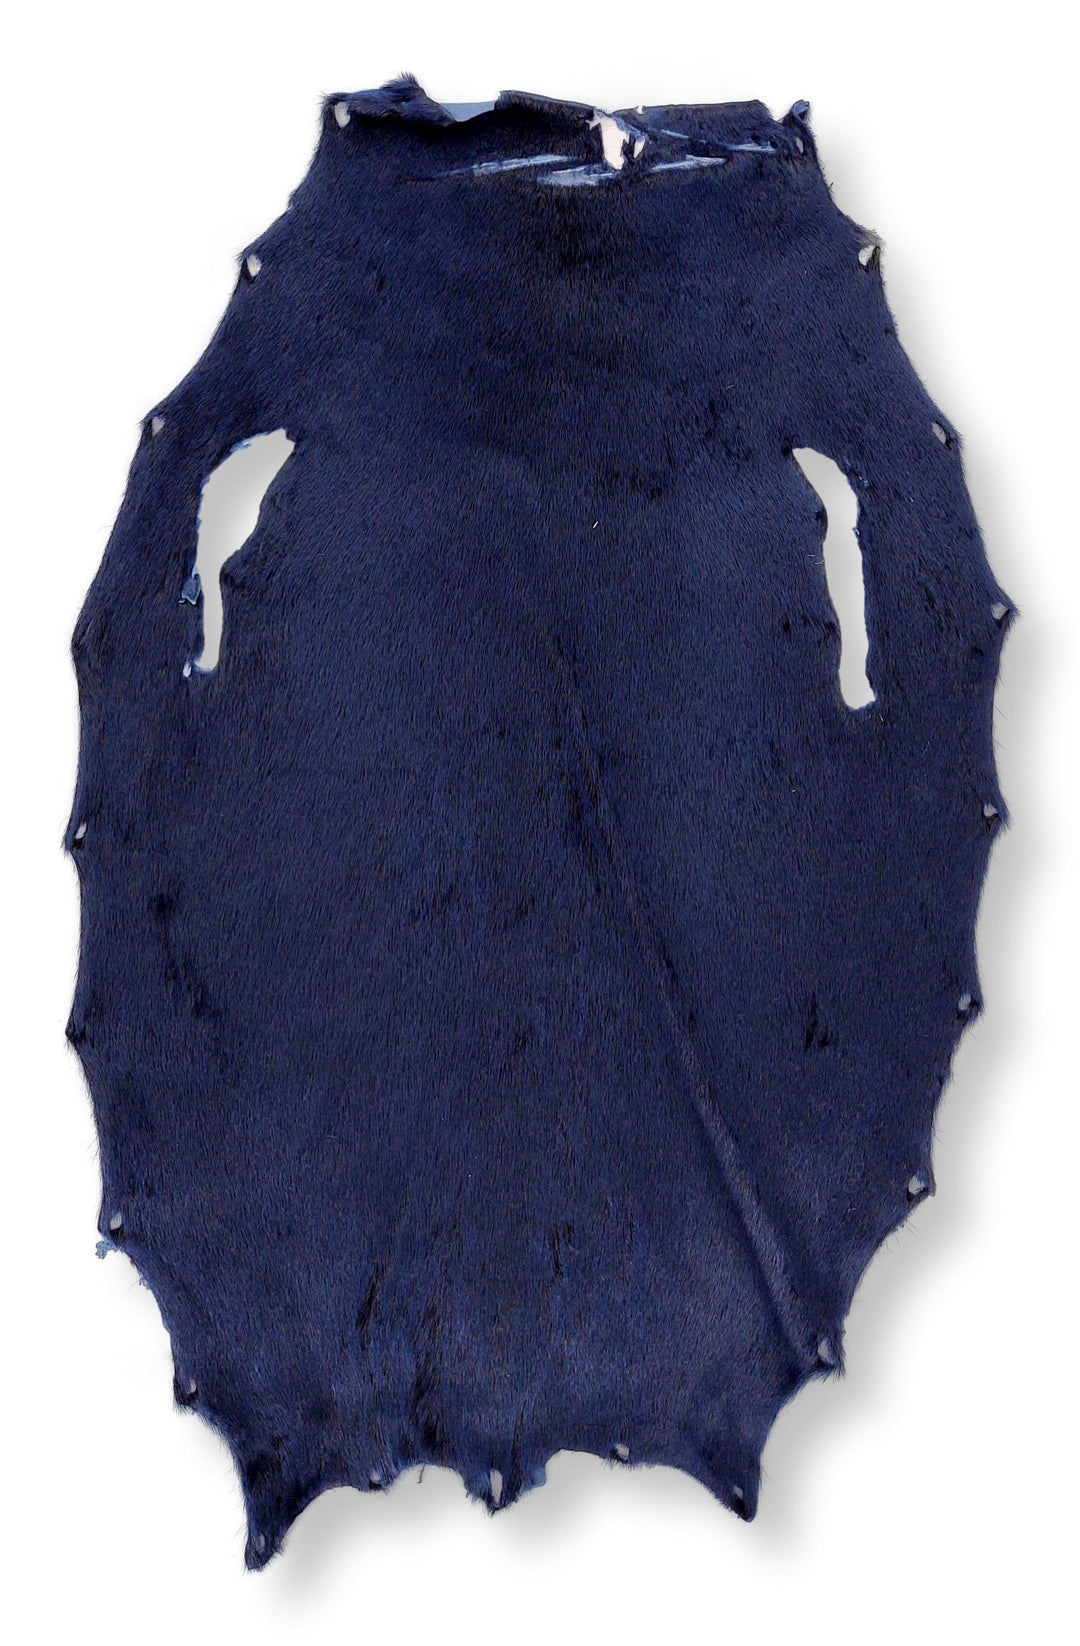 Phoque annelé - Bleu - Peau de fourrure habillée